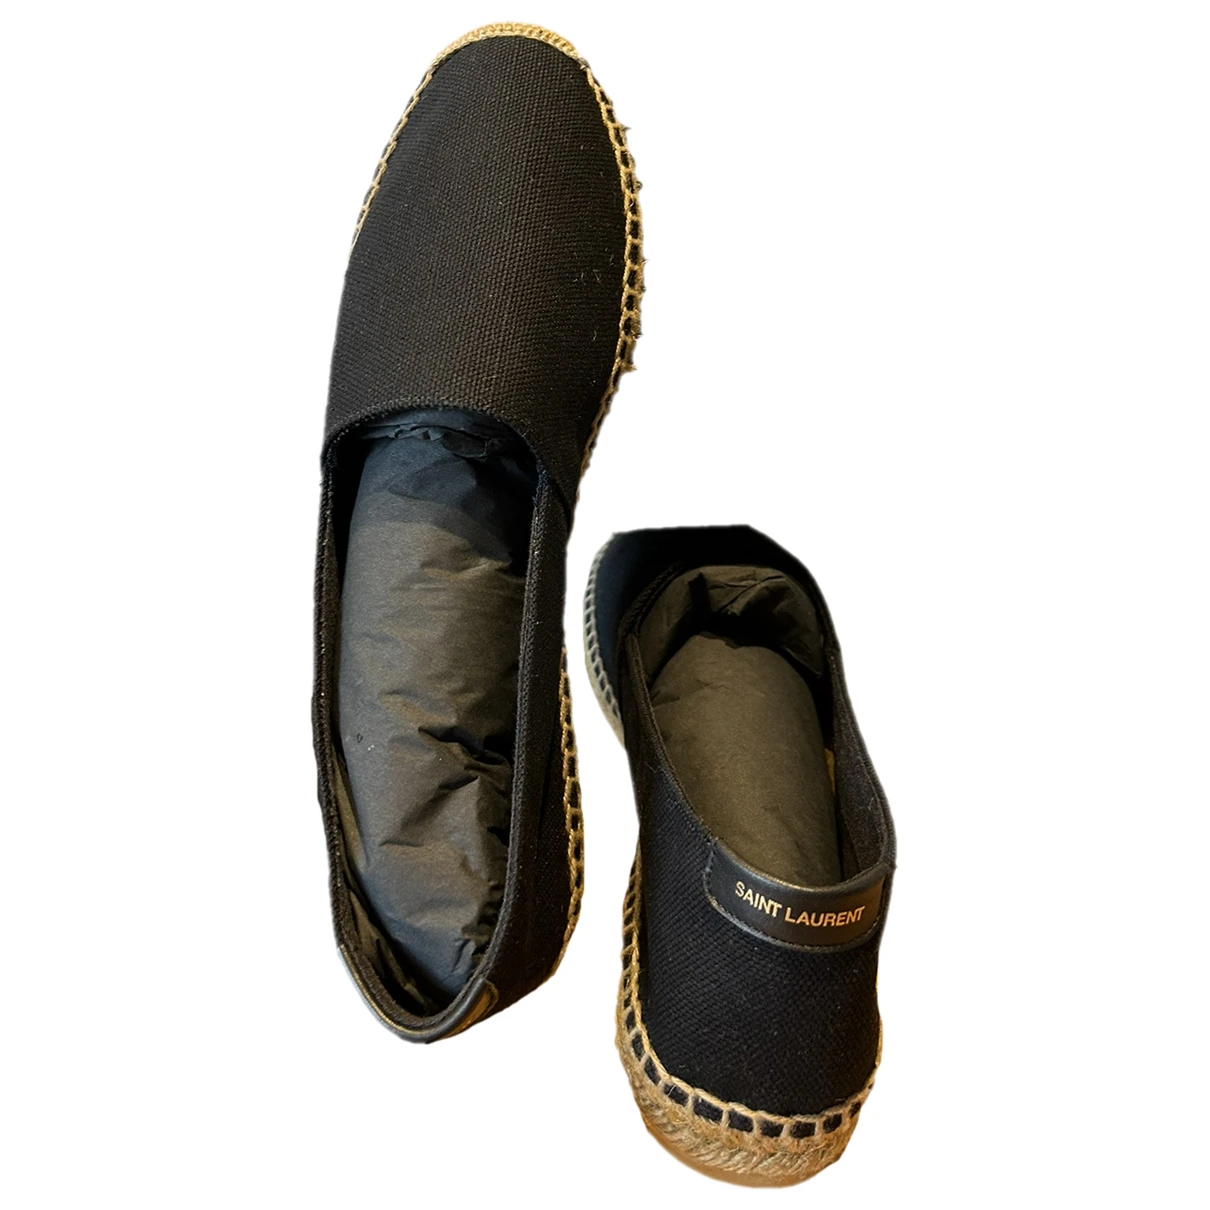 shoes Saint Laurent espadrilles for Female Denim - Jeans 40 IT. Used condition